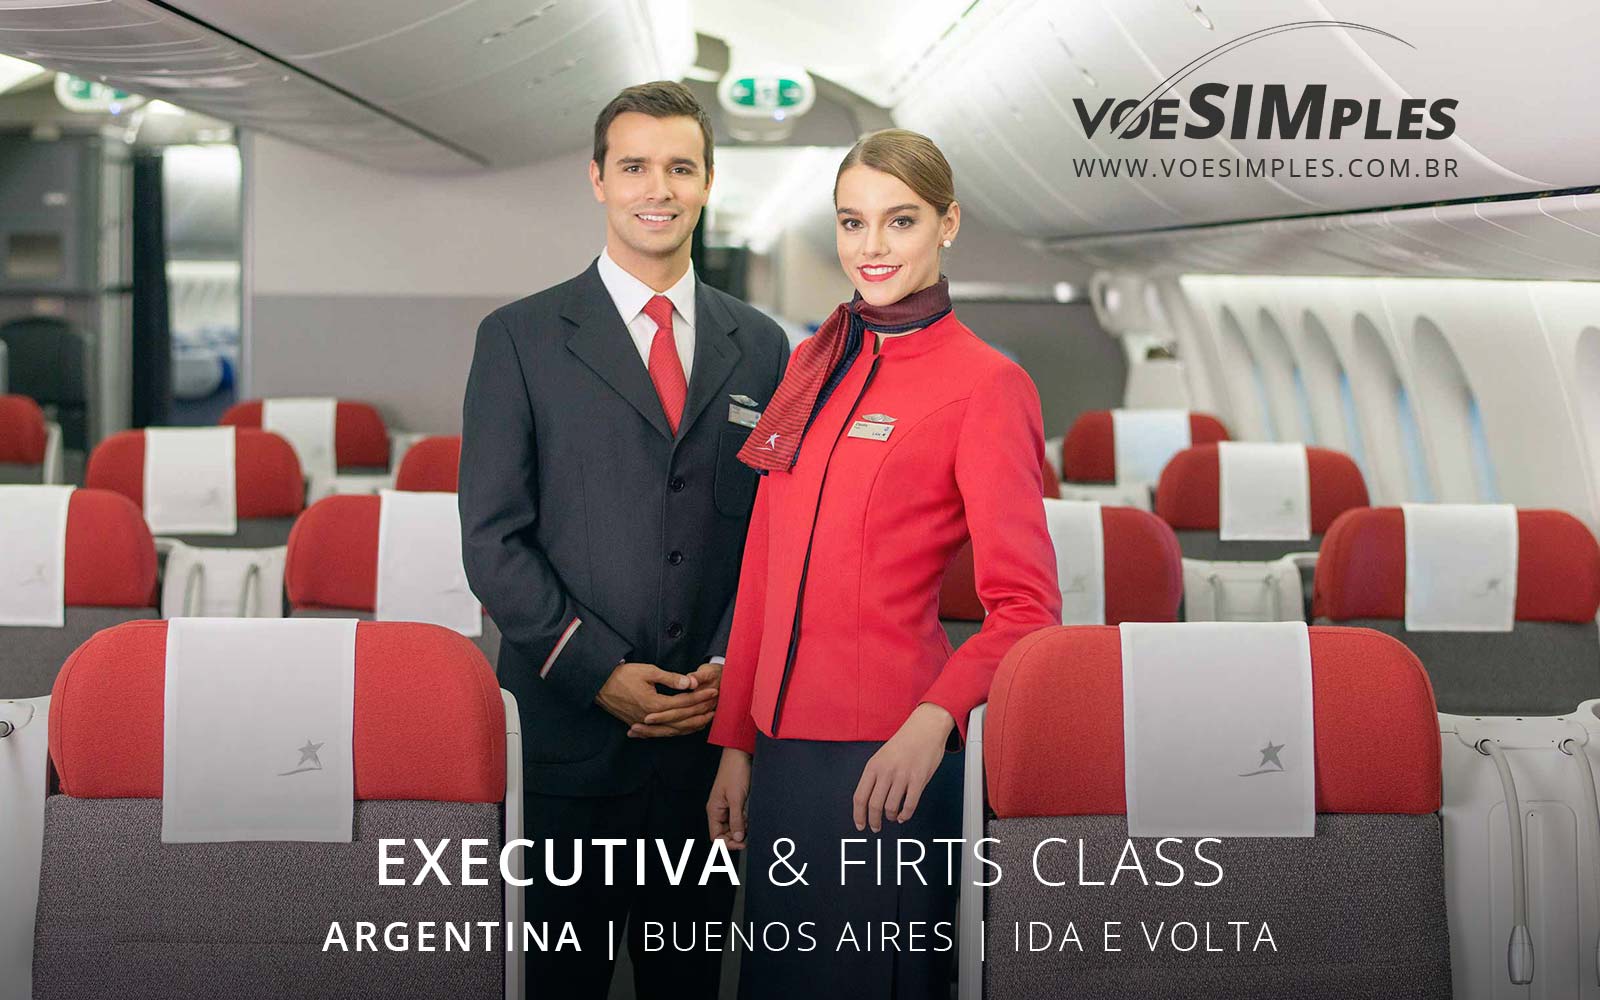 passagens-aereas-executiva-baratas-buenos-aires-argentina-premium-economy-voe-simples-passages-aereas-promocionais-executivas-argentina-passagem-promo-executiva-buenos-aires